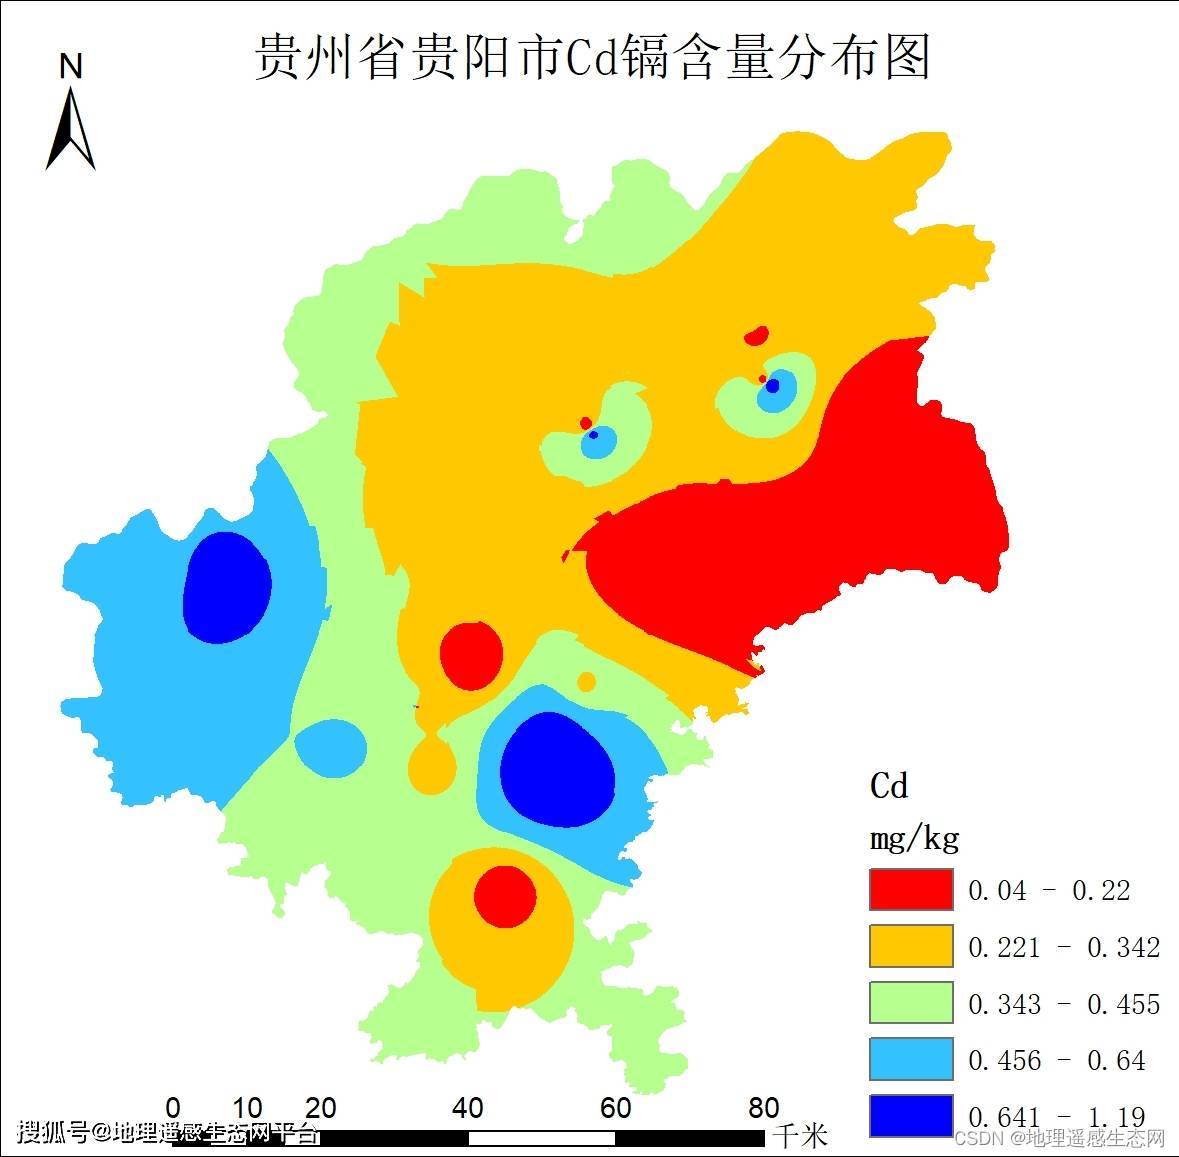 一图读懂 | 广东省高标准农田建设（2021-2030年） - 恒地空间